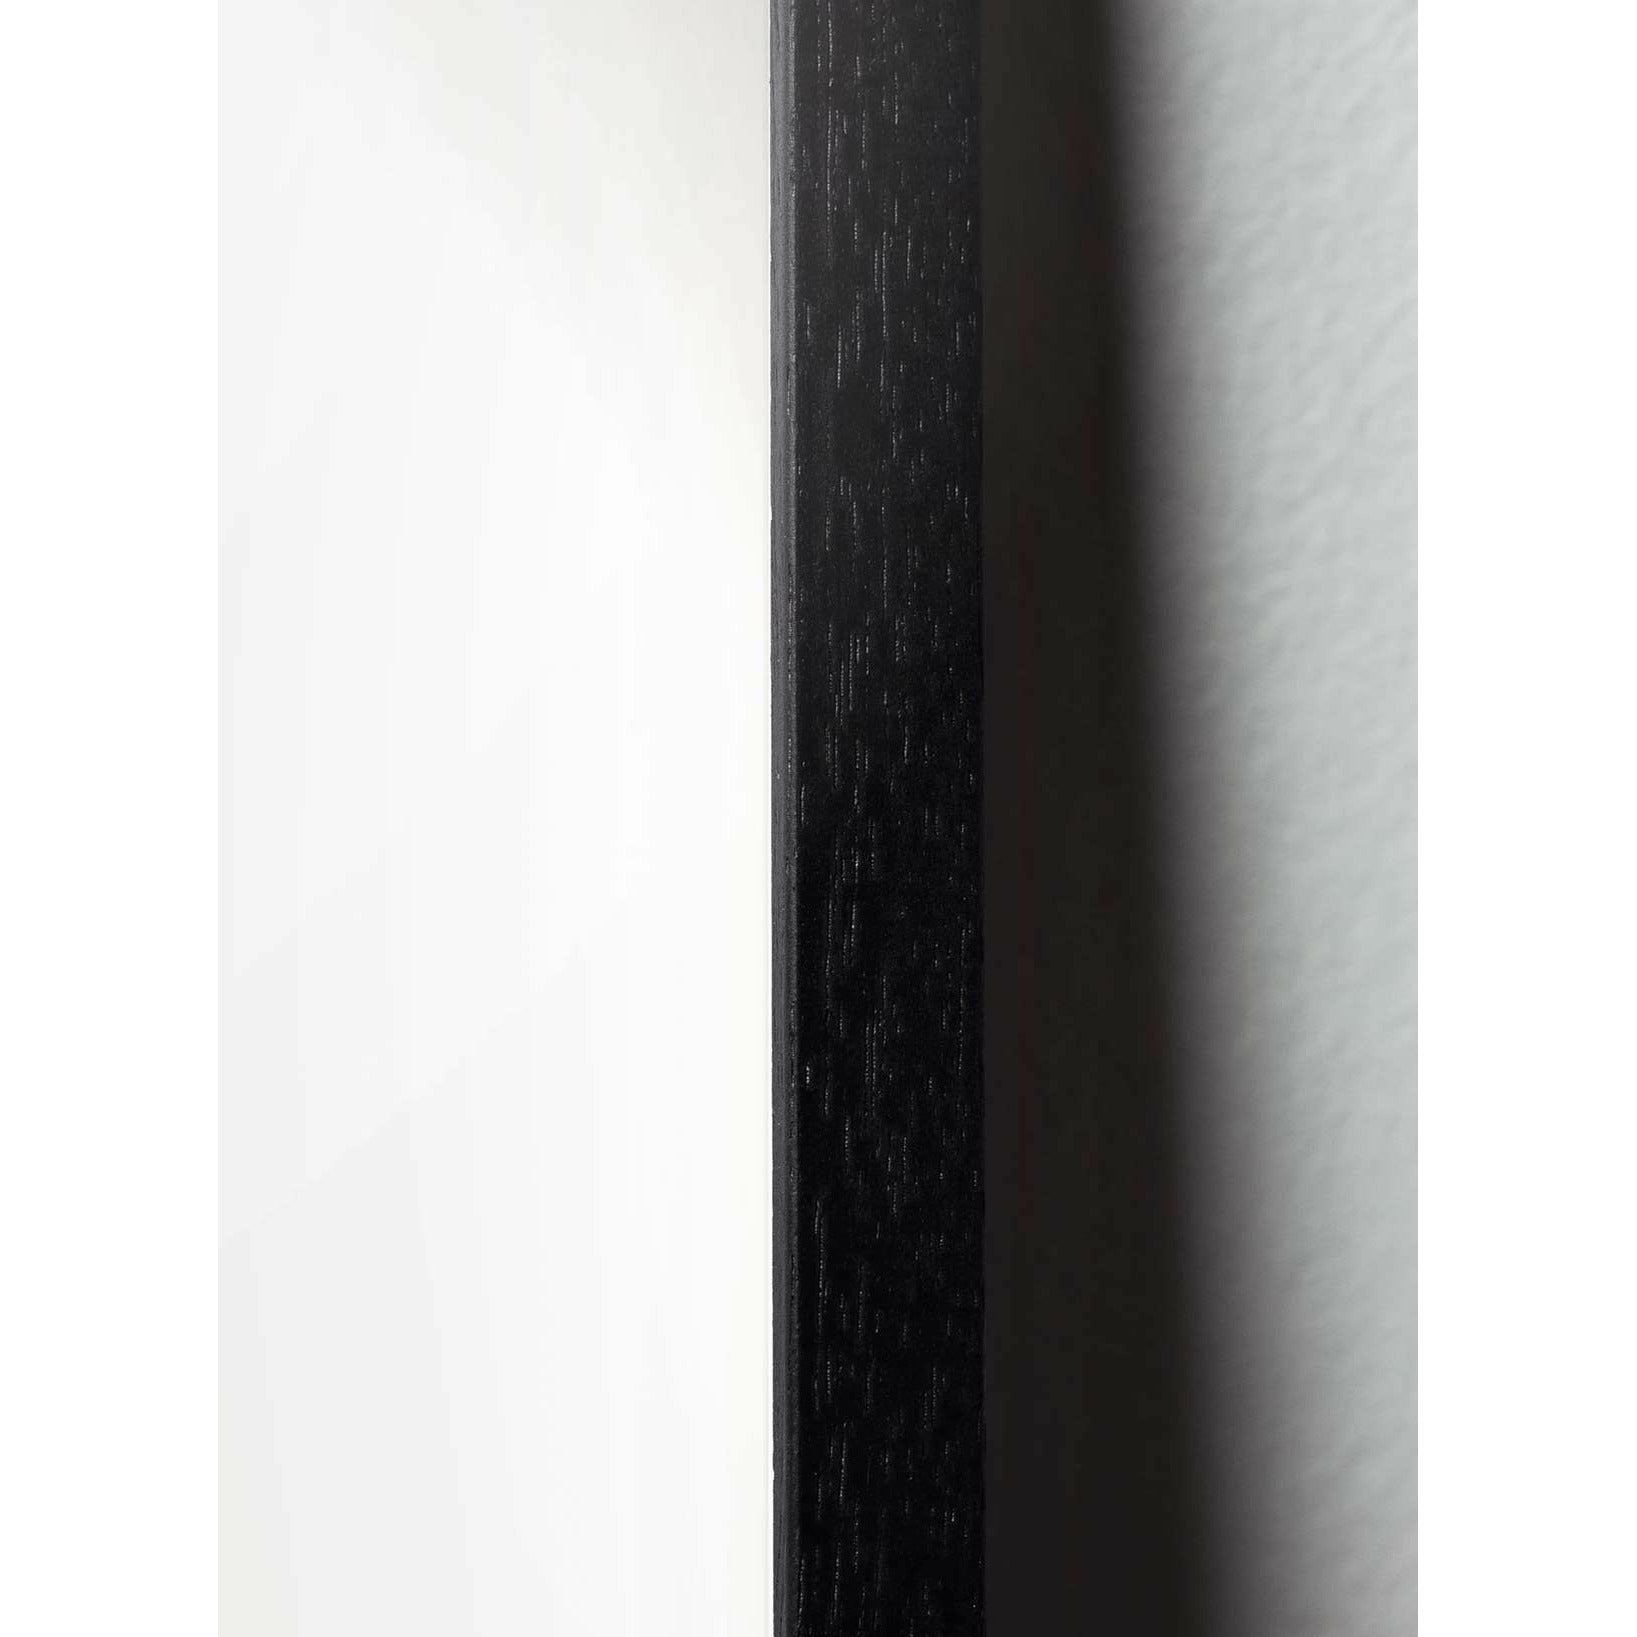 Plakát linie vajec v mozku, rám v černém lakovaném dřevu 70x100 cm, bílé pozadí